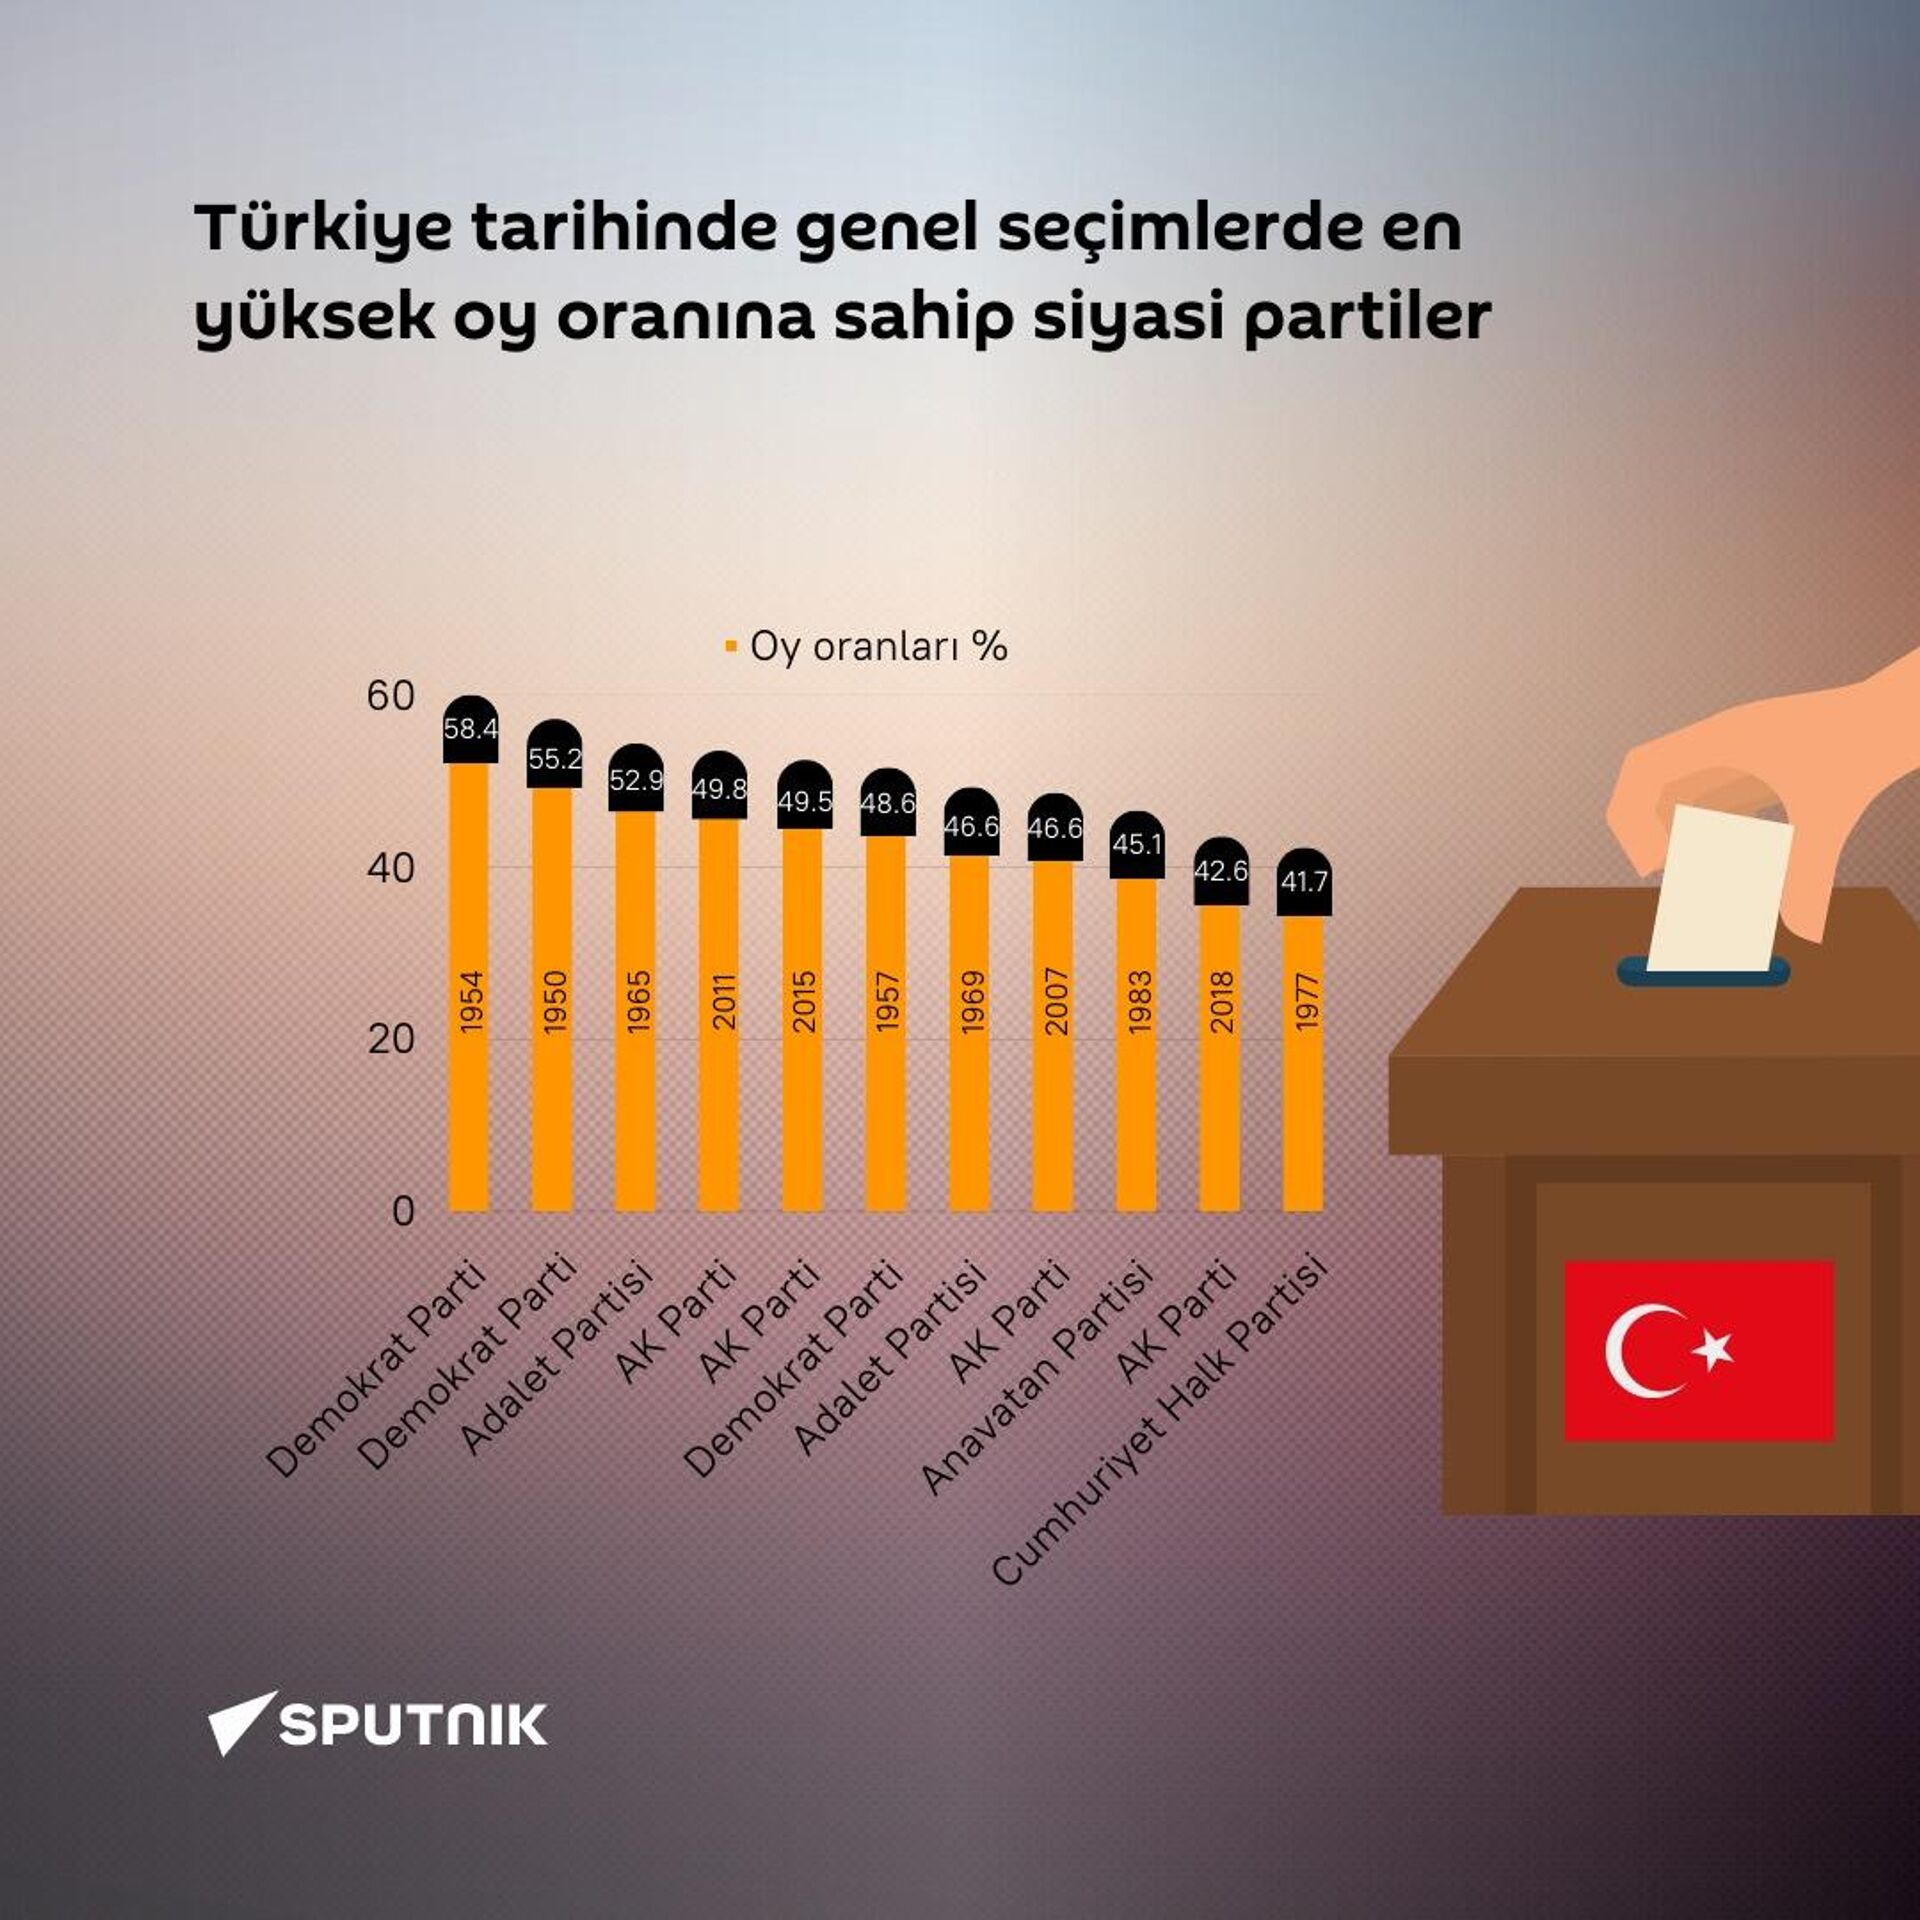 Türkiye tarihinde genel seçimlerde en yüksek oy oranına sahip partiler hangileri? - Sputnik Türkiye, 1920, 28.03.2023